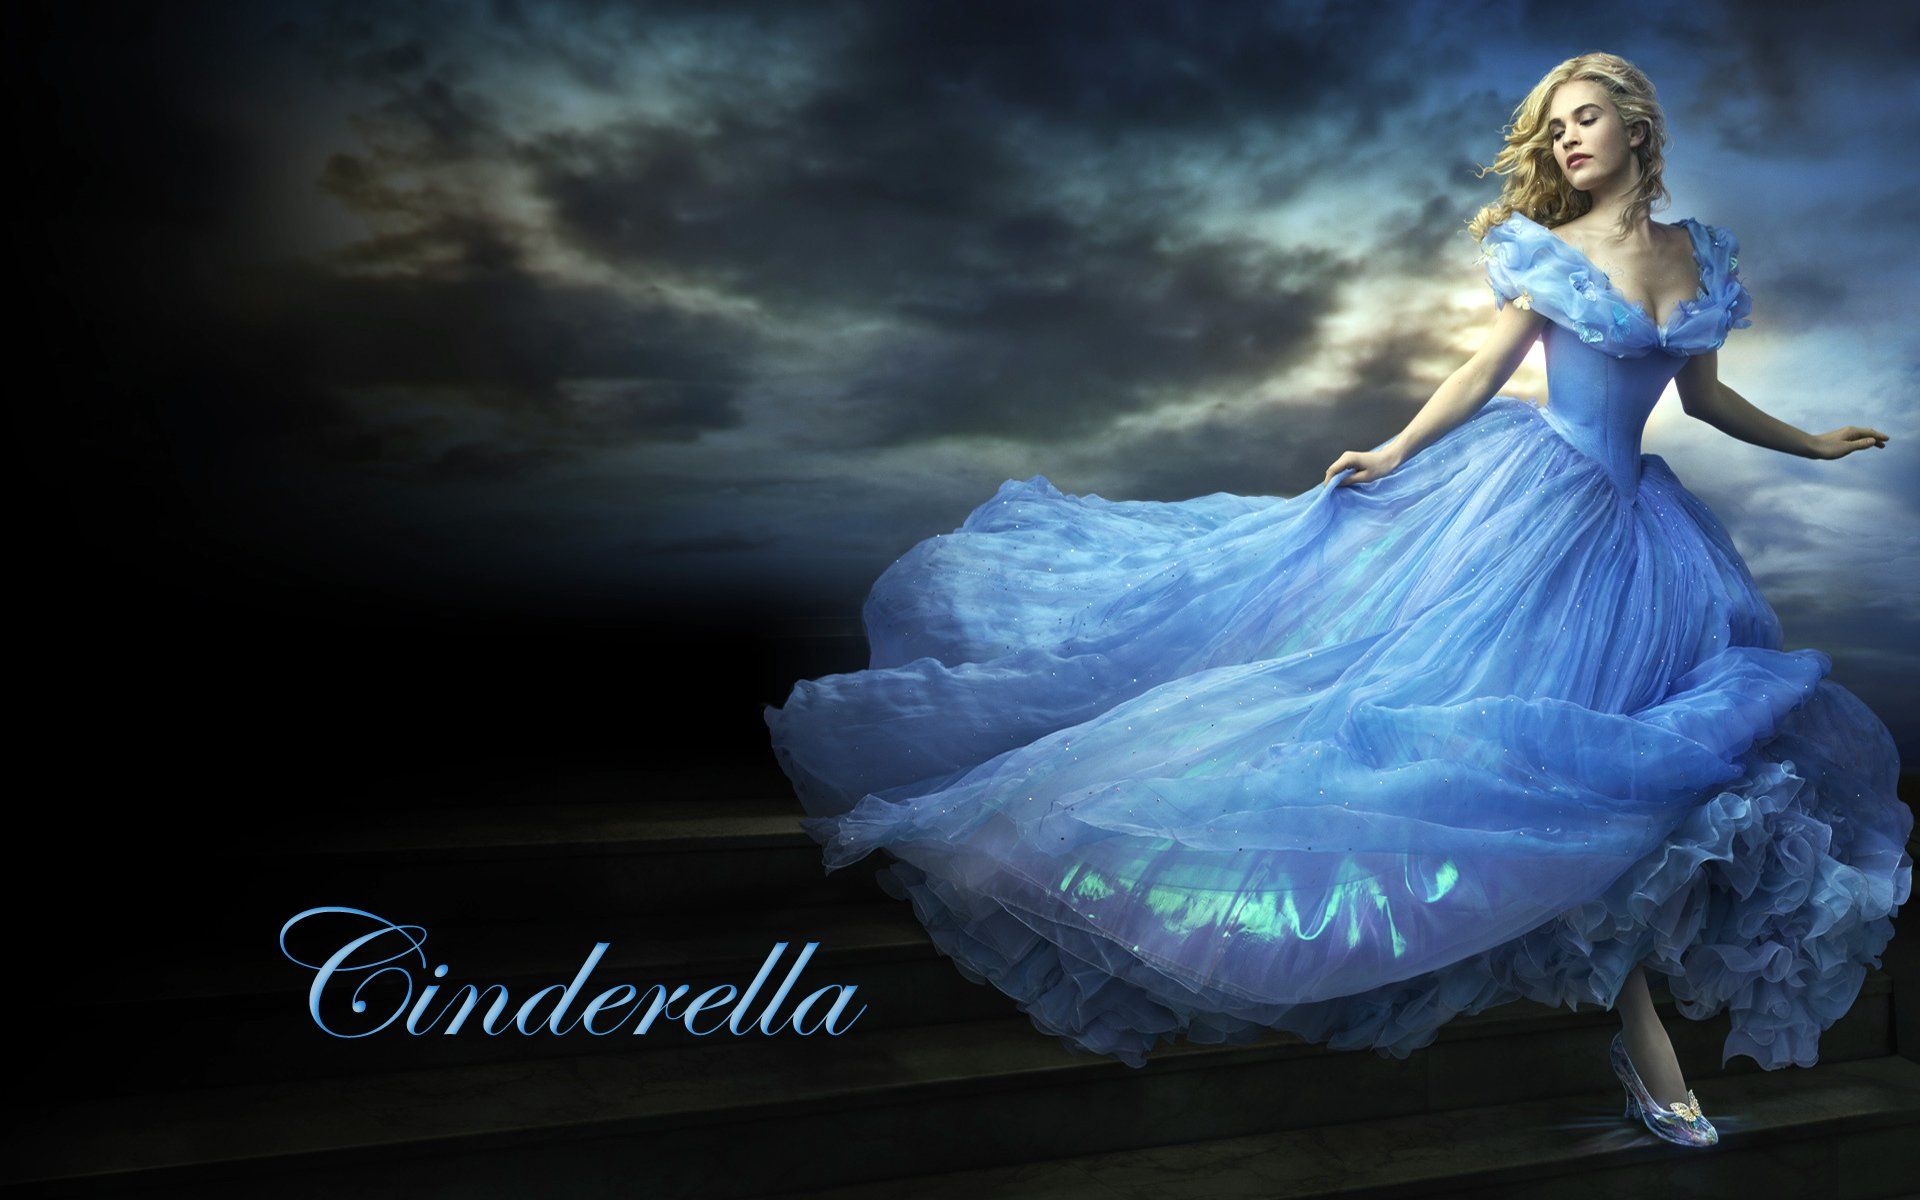 Live Action Cinderella Wallpaper .wallpaperafari.com